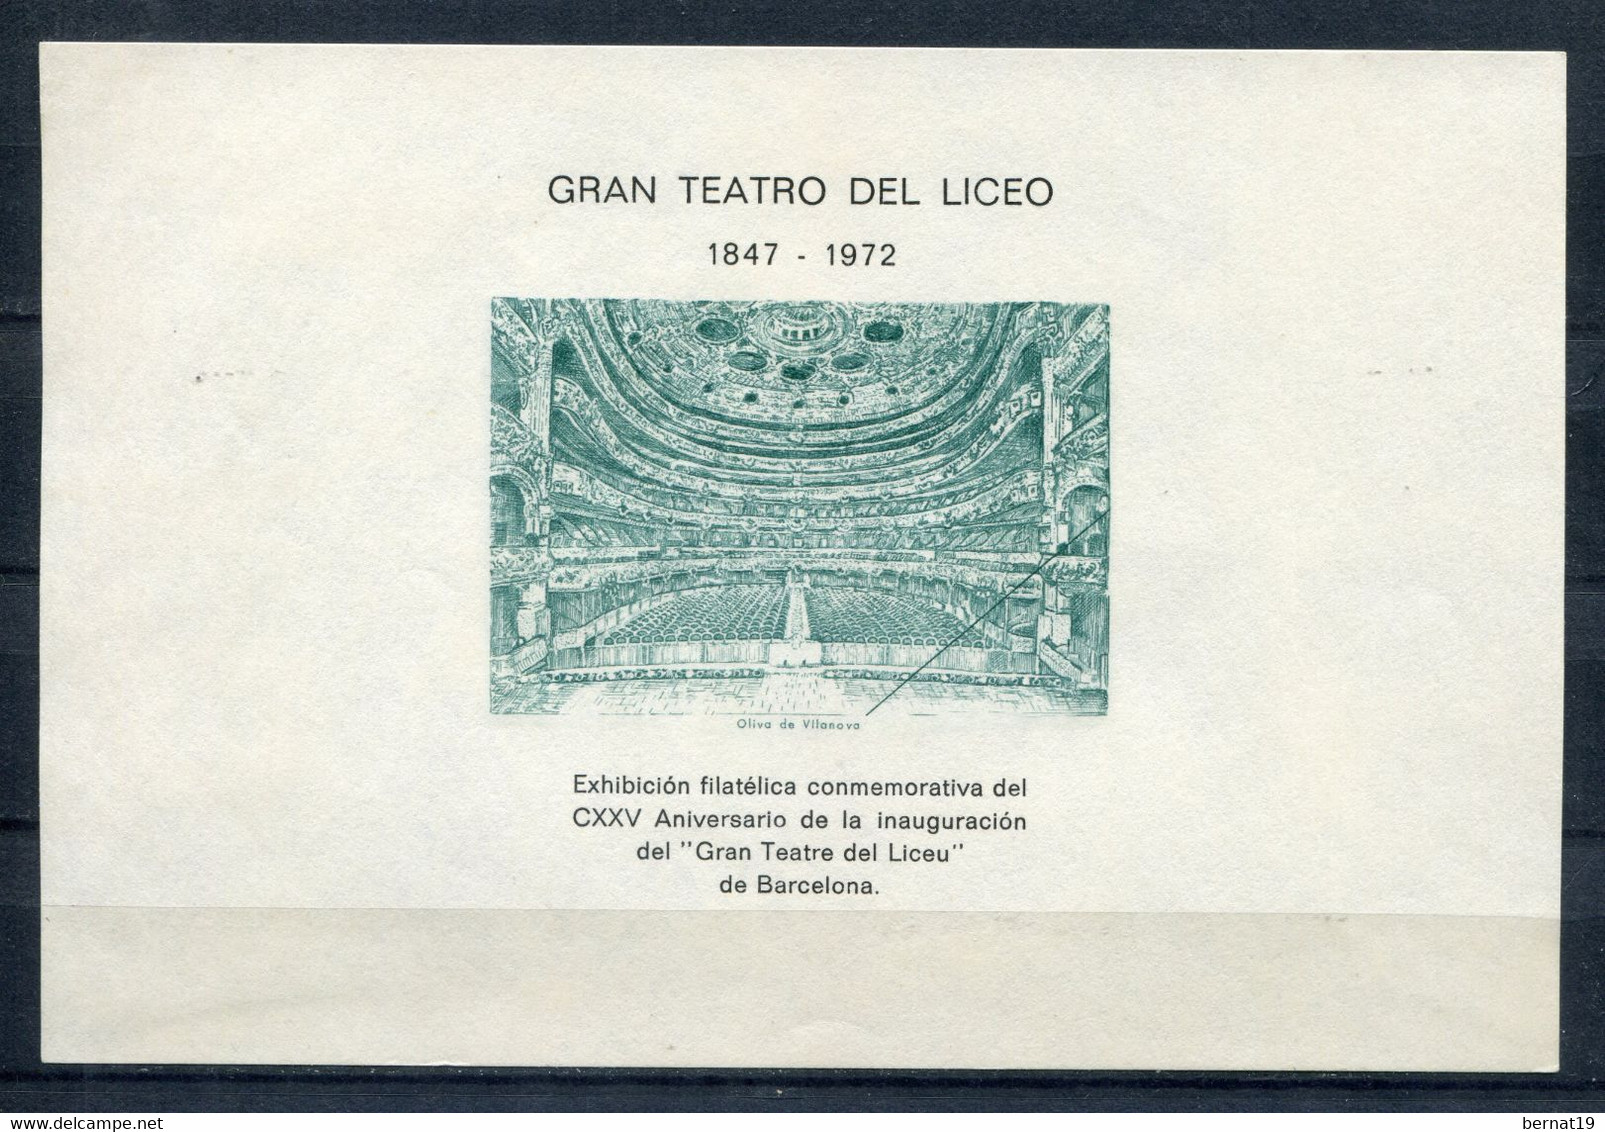 125 Aniversario Del Gran Teatro Del Liceo. - Feuillets Souvenir